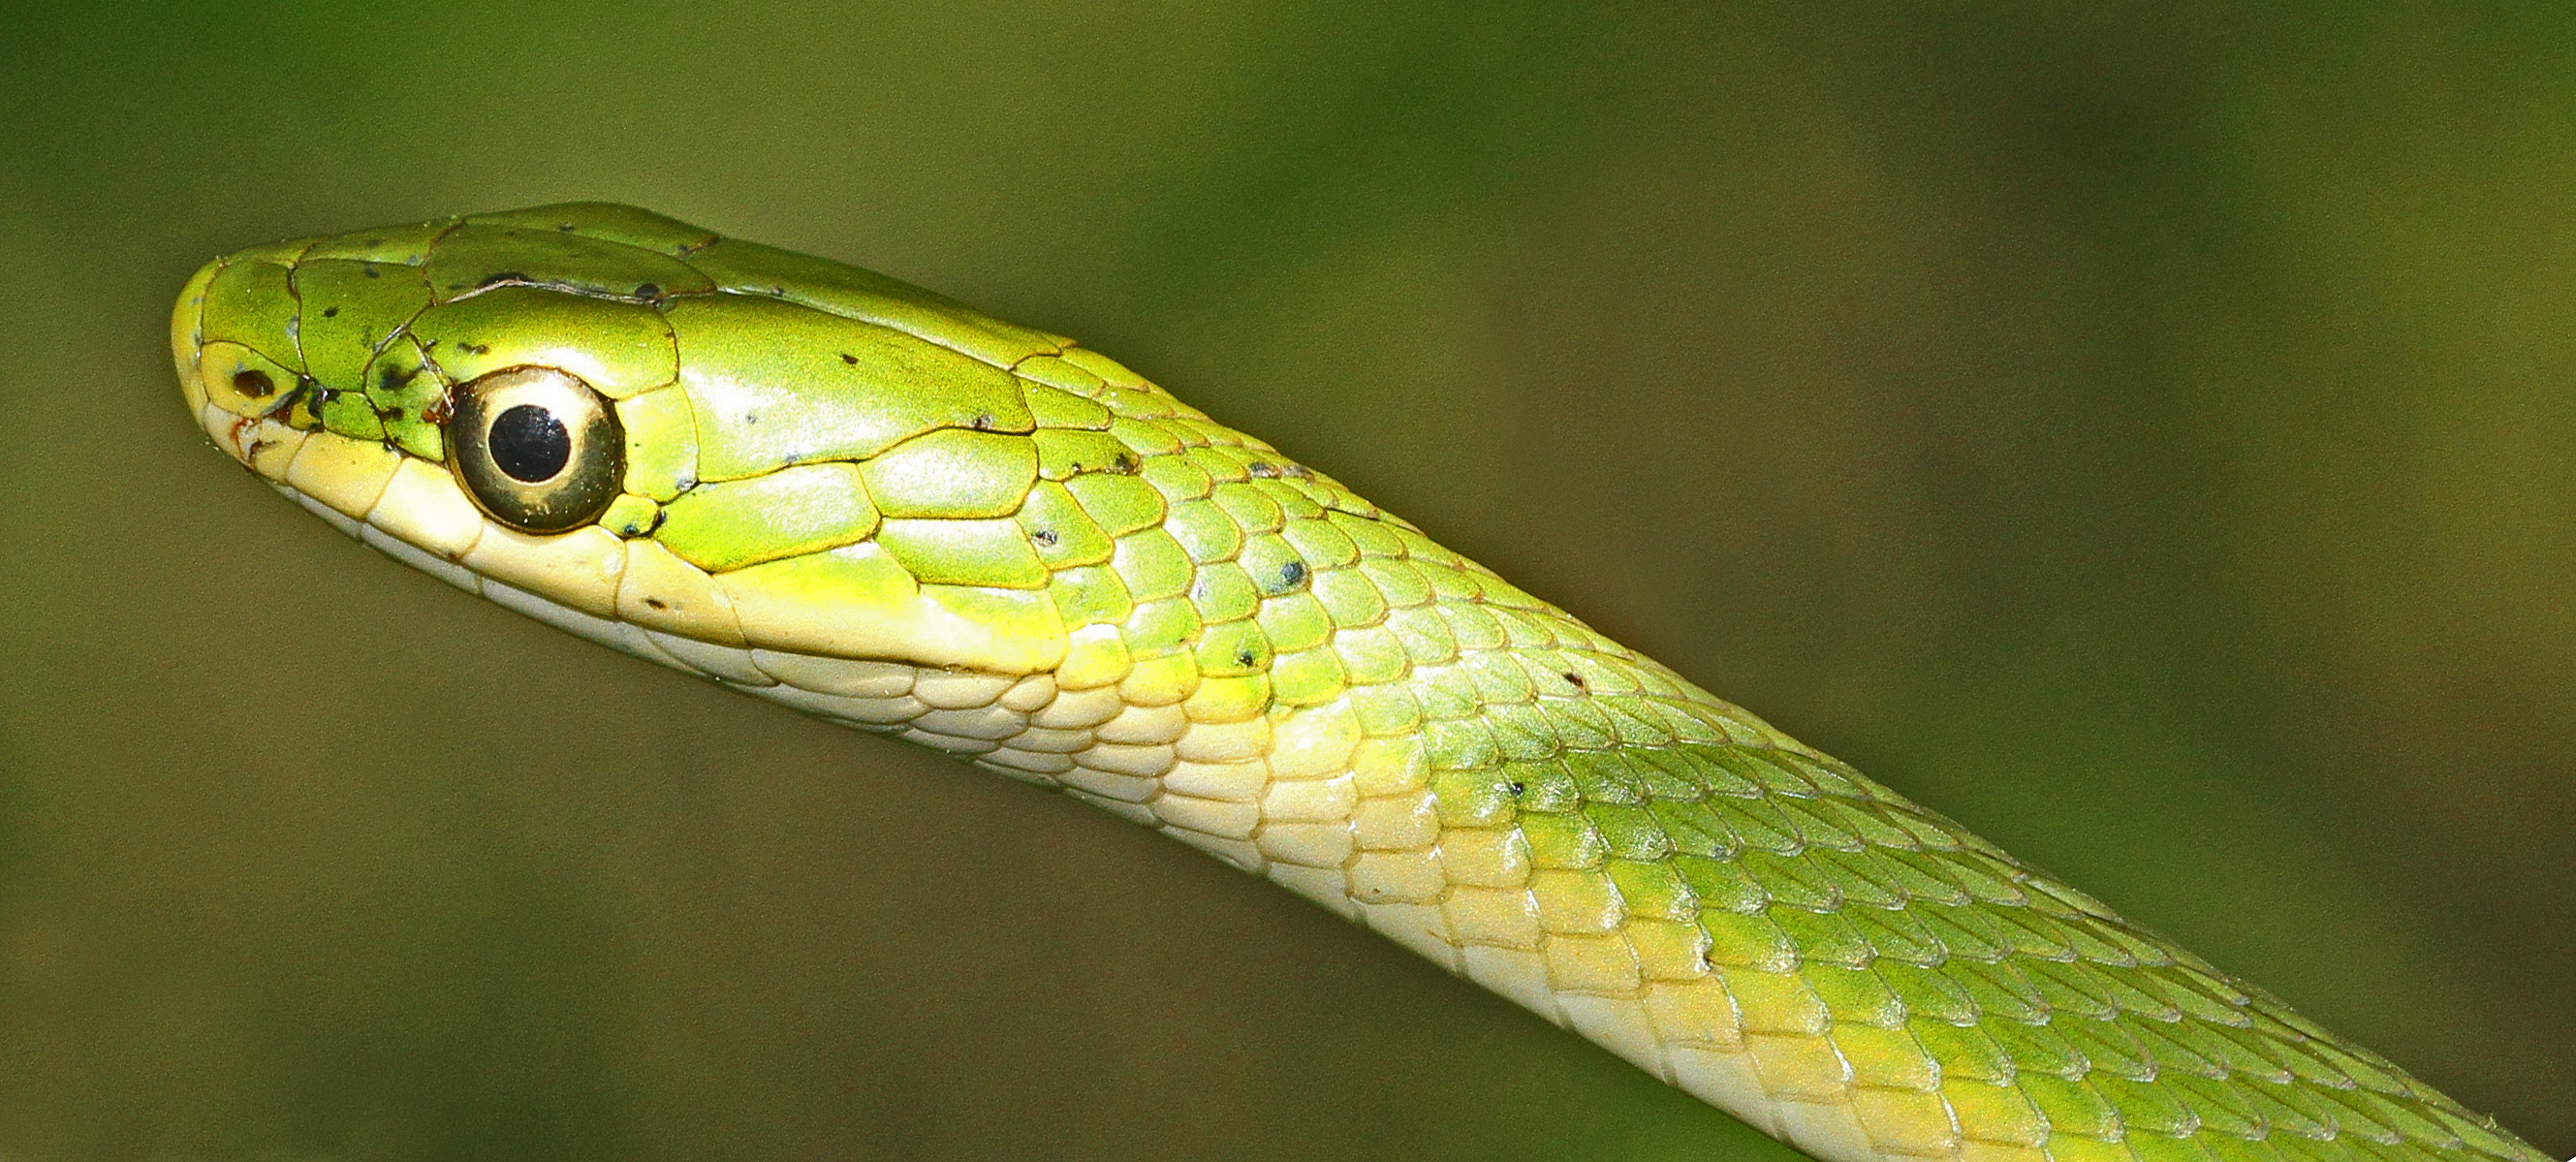 File:Rough Green Snake - Opheodrys aestivus.jpg - Wikimedia Commons